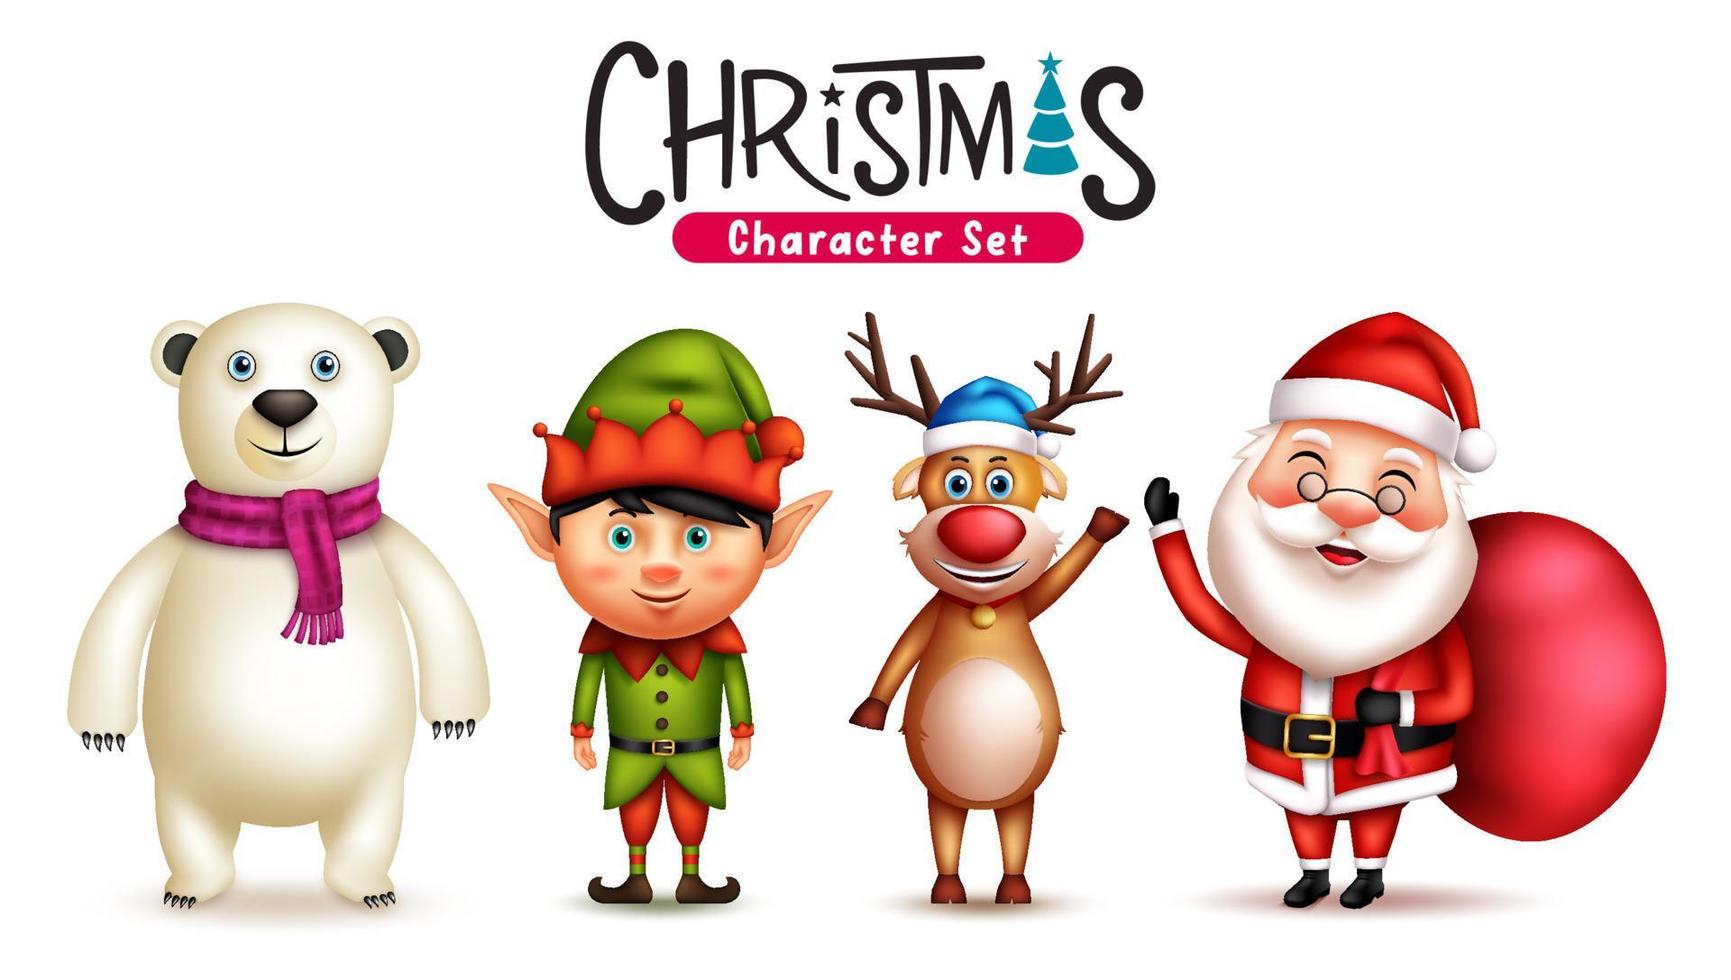 Weihnachten-Zeichen-Vektor-Set. Weihnachtsmann, Elf, Rentier und Eisbär 3D-Weihnachtsfigur mit süßen und freundlichen Ausdrücken für die Weihnachtssaison-Designkollektion. Vektor-Illustration. vektor